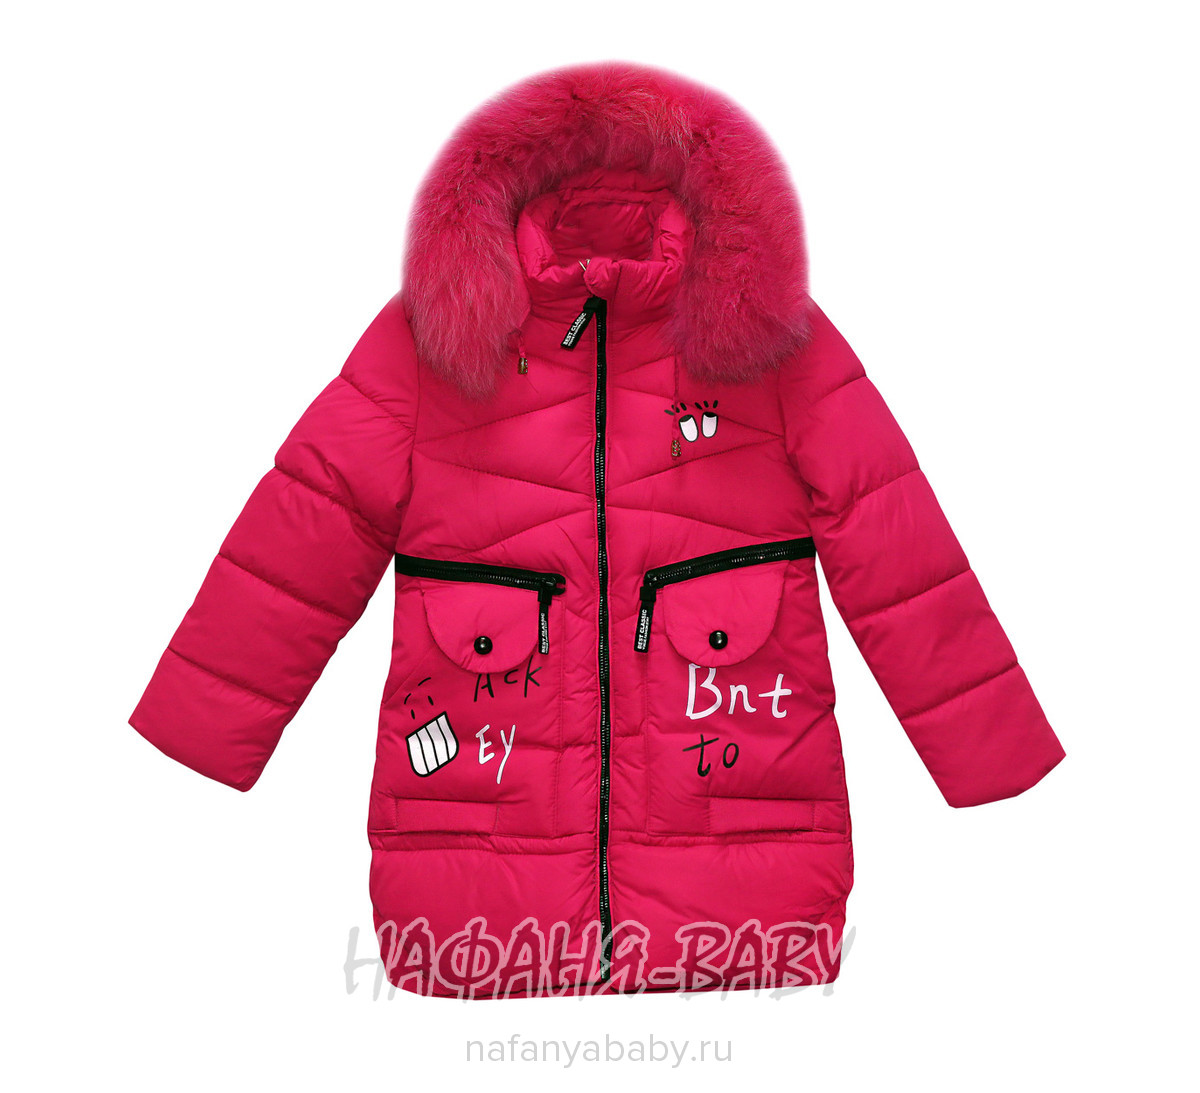 Детское пальто L-Z, купить в интернет магазине Нафаня. арт: 2713.